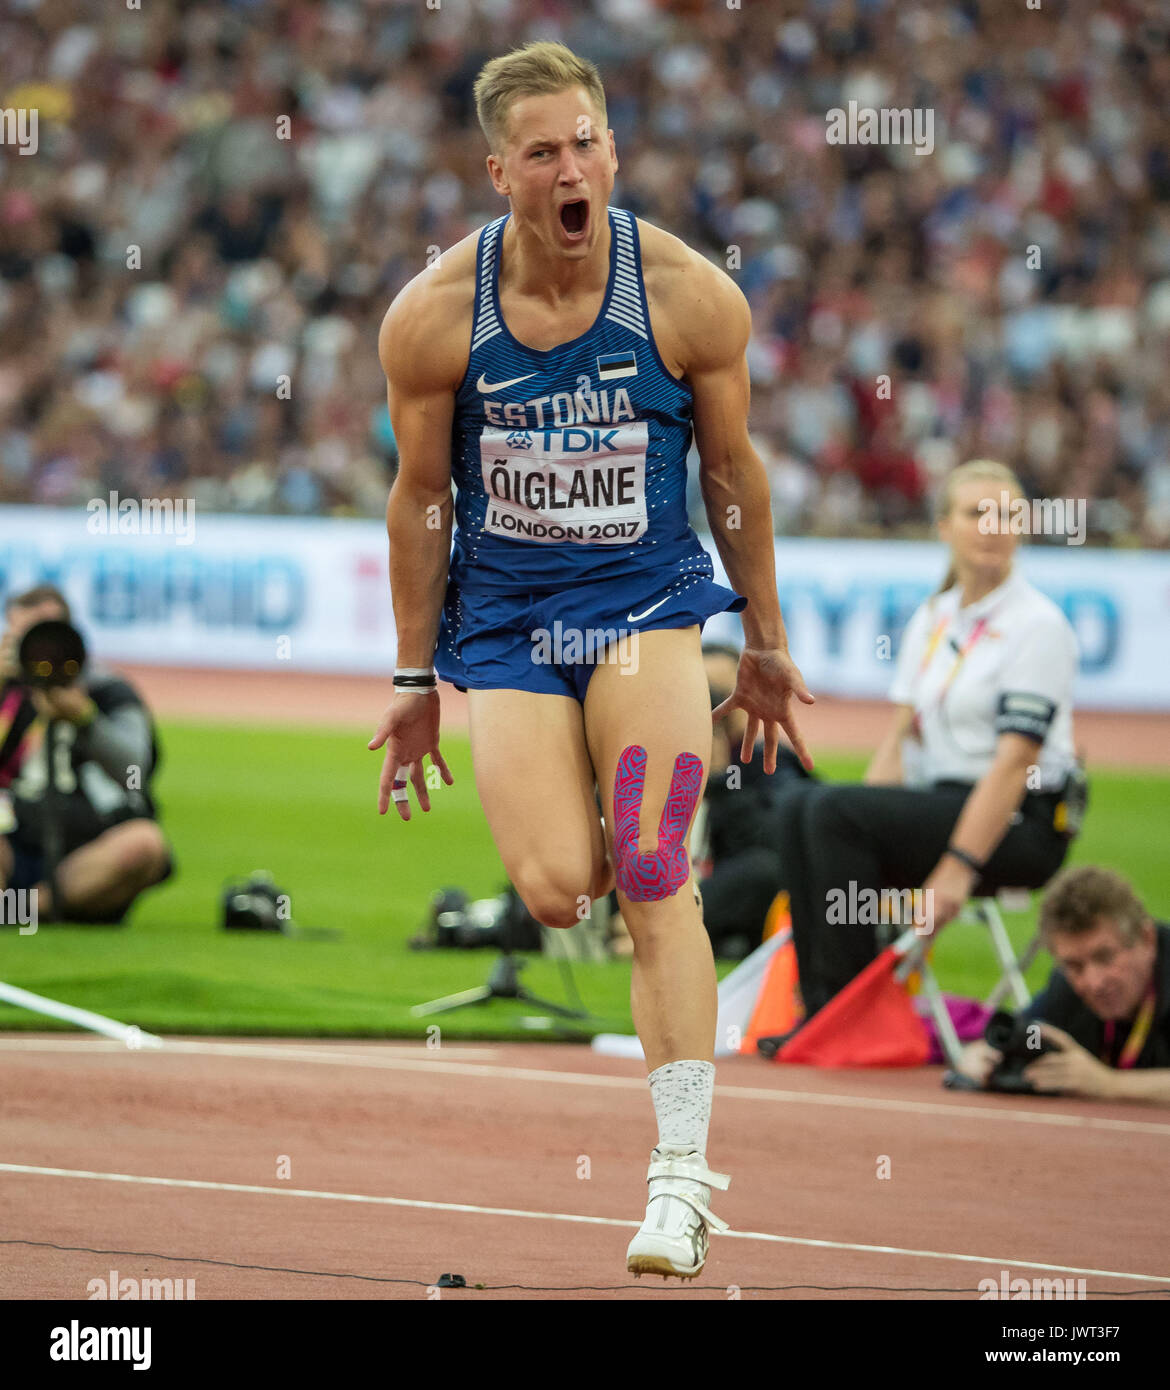 Janek OIGLANE d'Estonie célèbre un lancer dans les hommes;s au cours de l'IAAF Javelot Décathlon Championnats du monde d'athlétisme 2017 le jour 9 aux Jeux Olympiques Banque D'Images